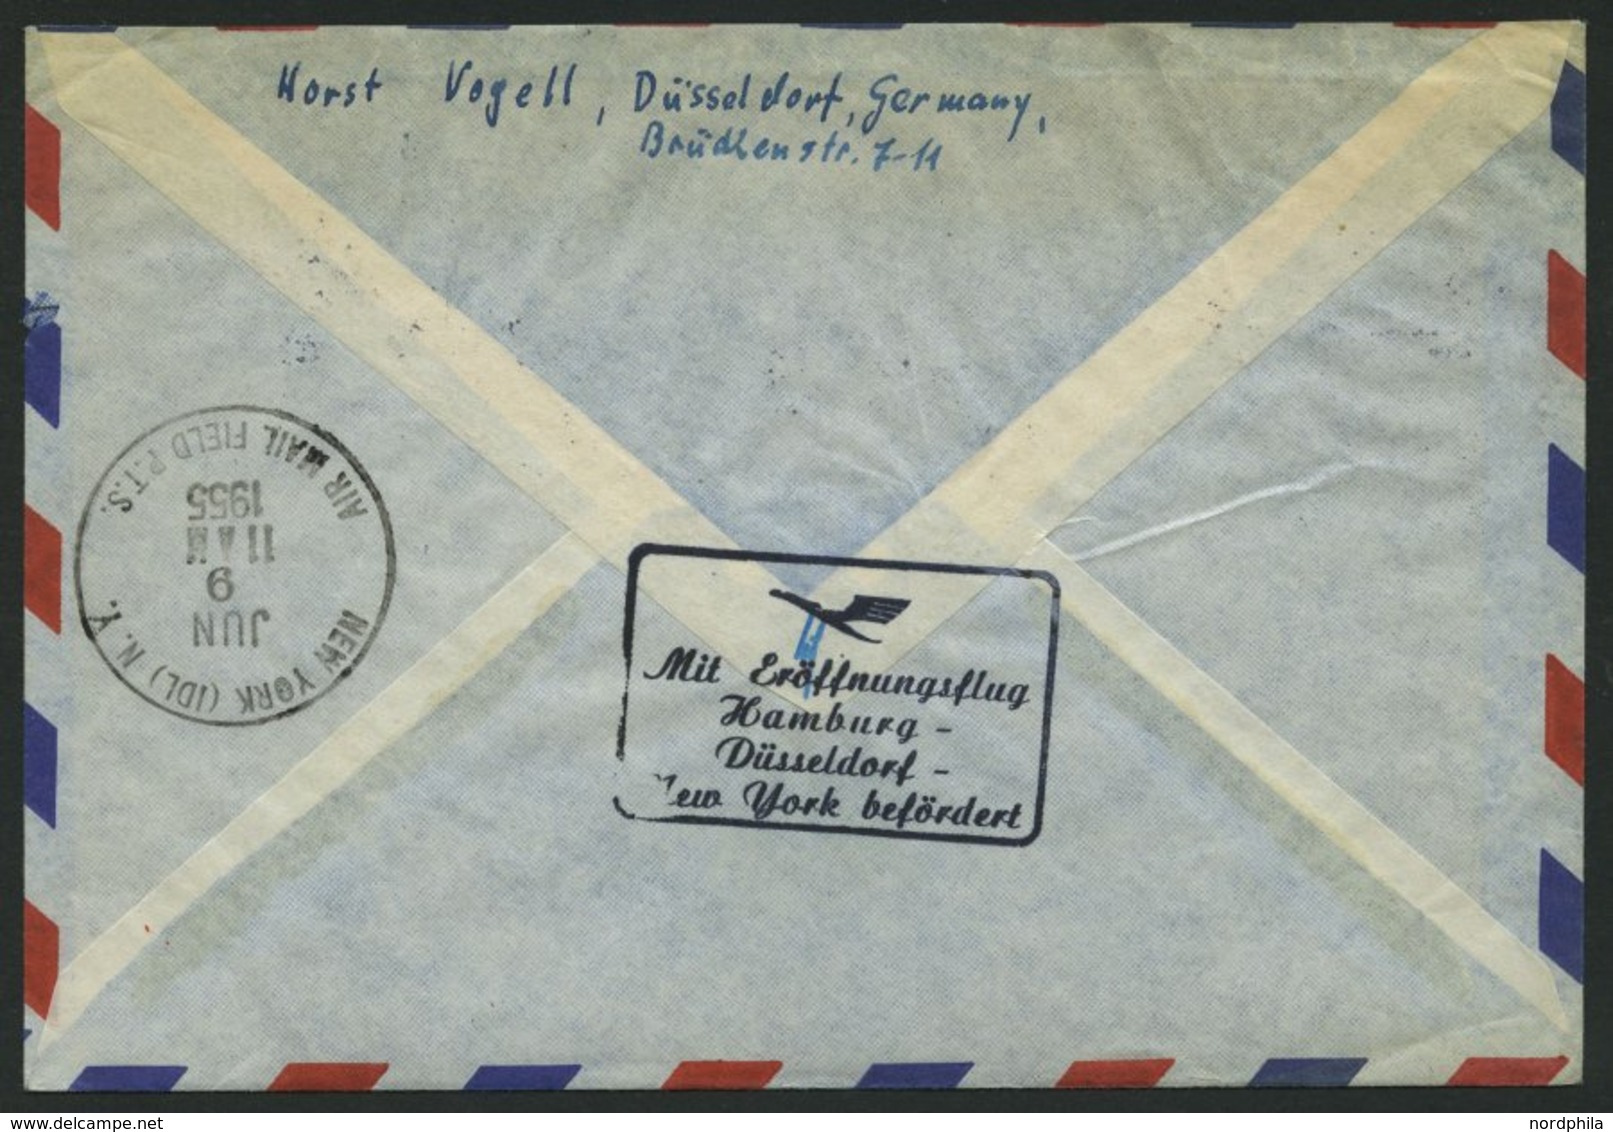 DEUTSCHE LUFTHANSA 34 BRIEF, 8.6.1955, Hamburg-New York, Frankiert Mit Komplettem Satz - Used Stamps